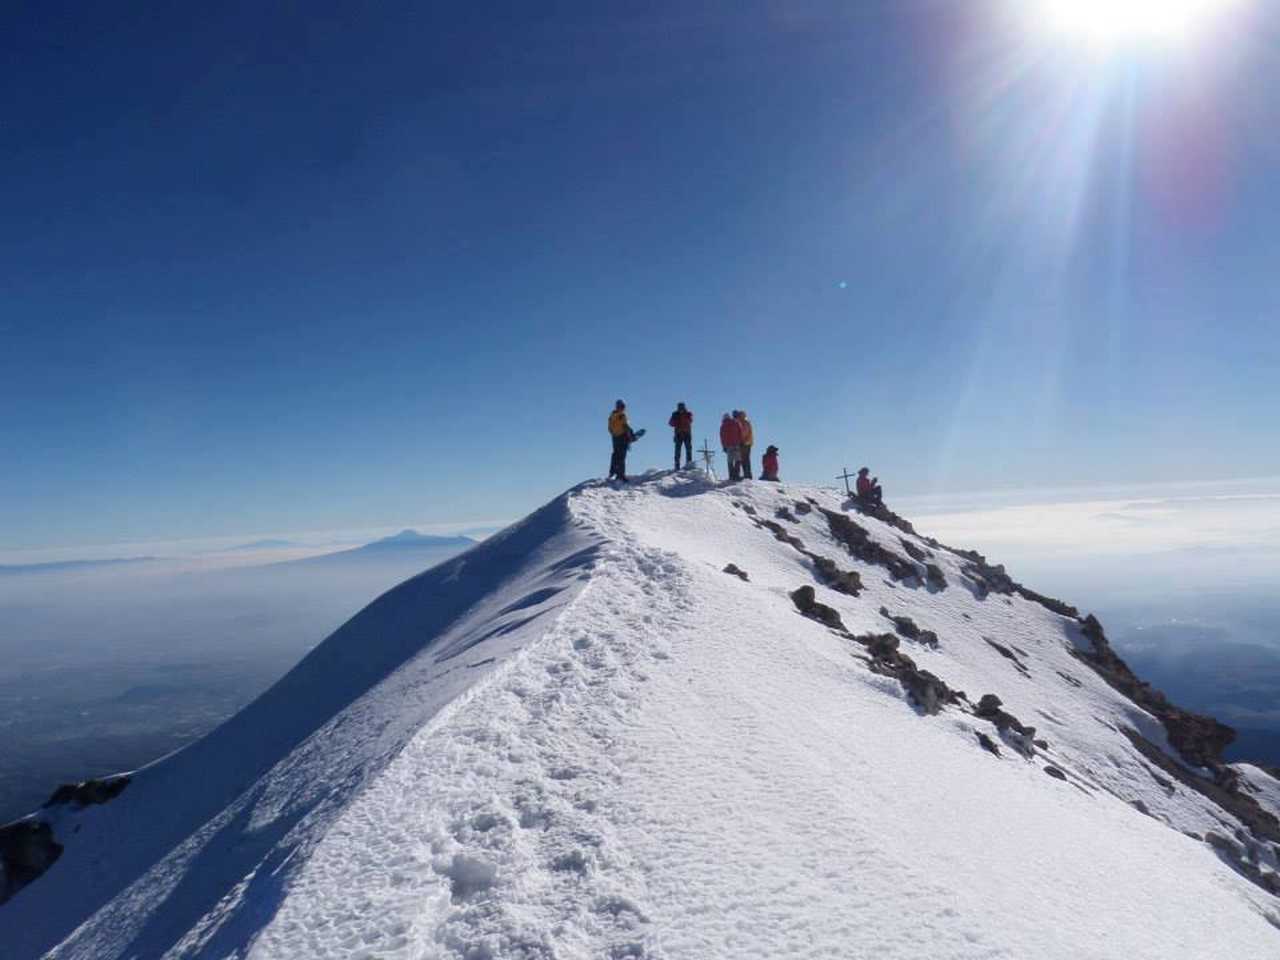 Au sommet du volcan Iztaccihualt au Mexique